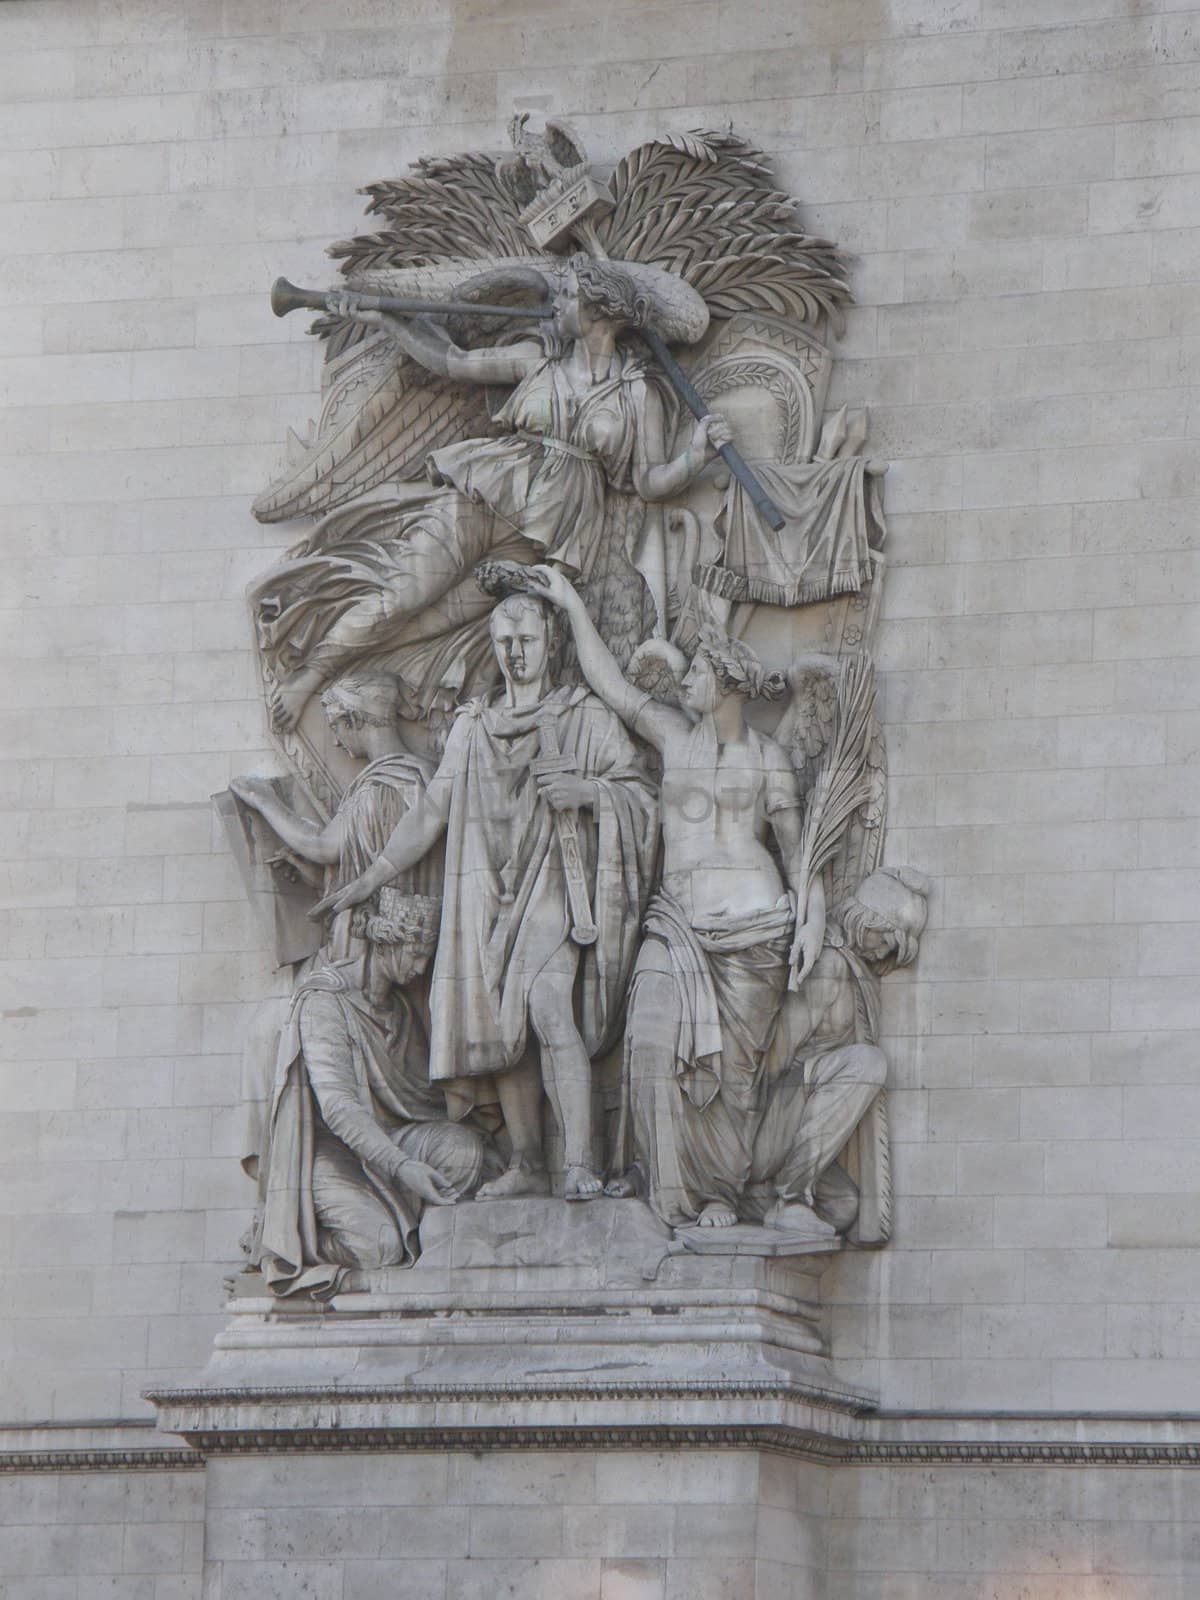 Arc De Triomphe in Paris, France